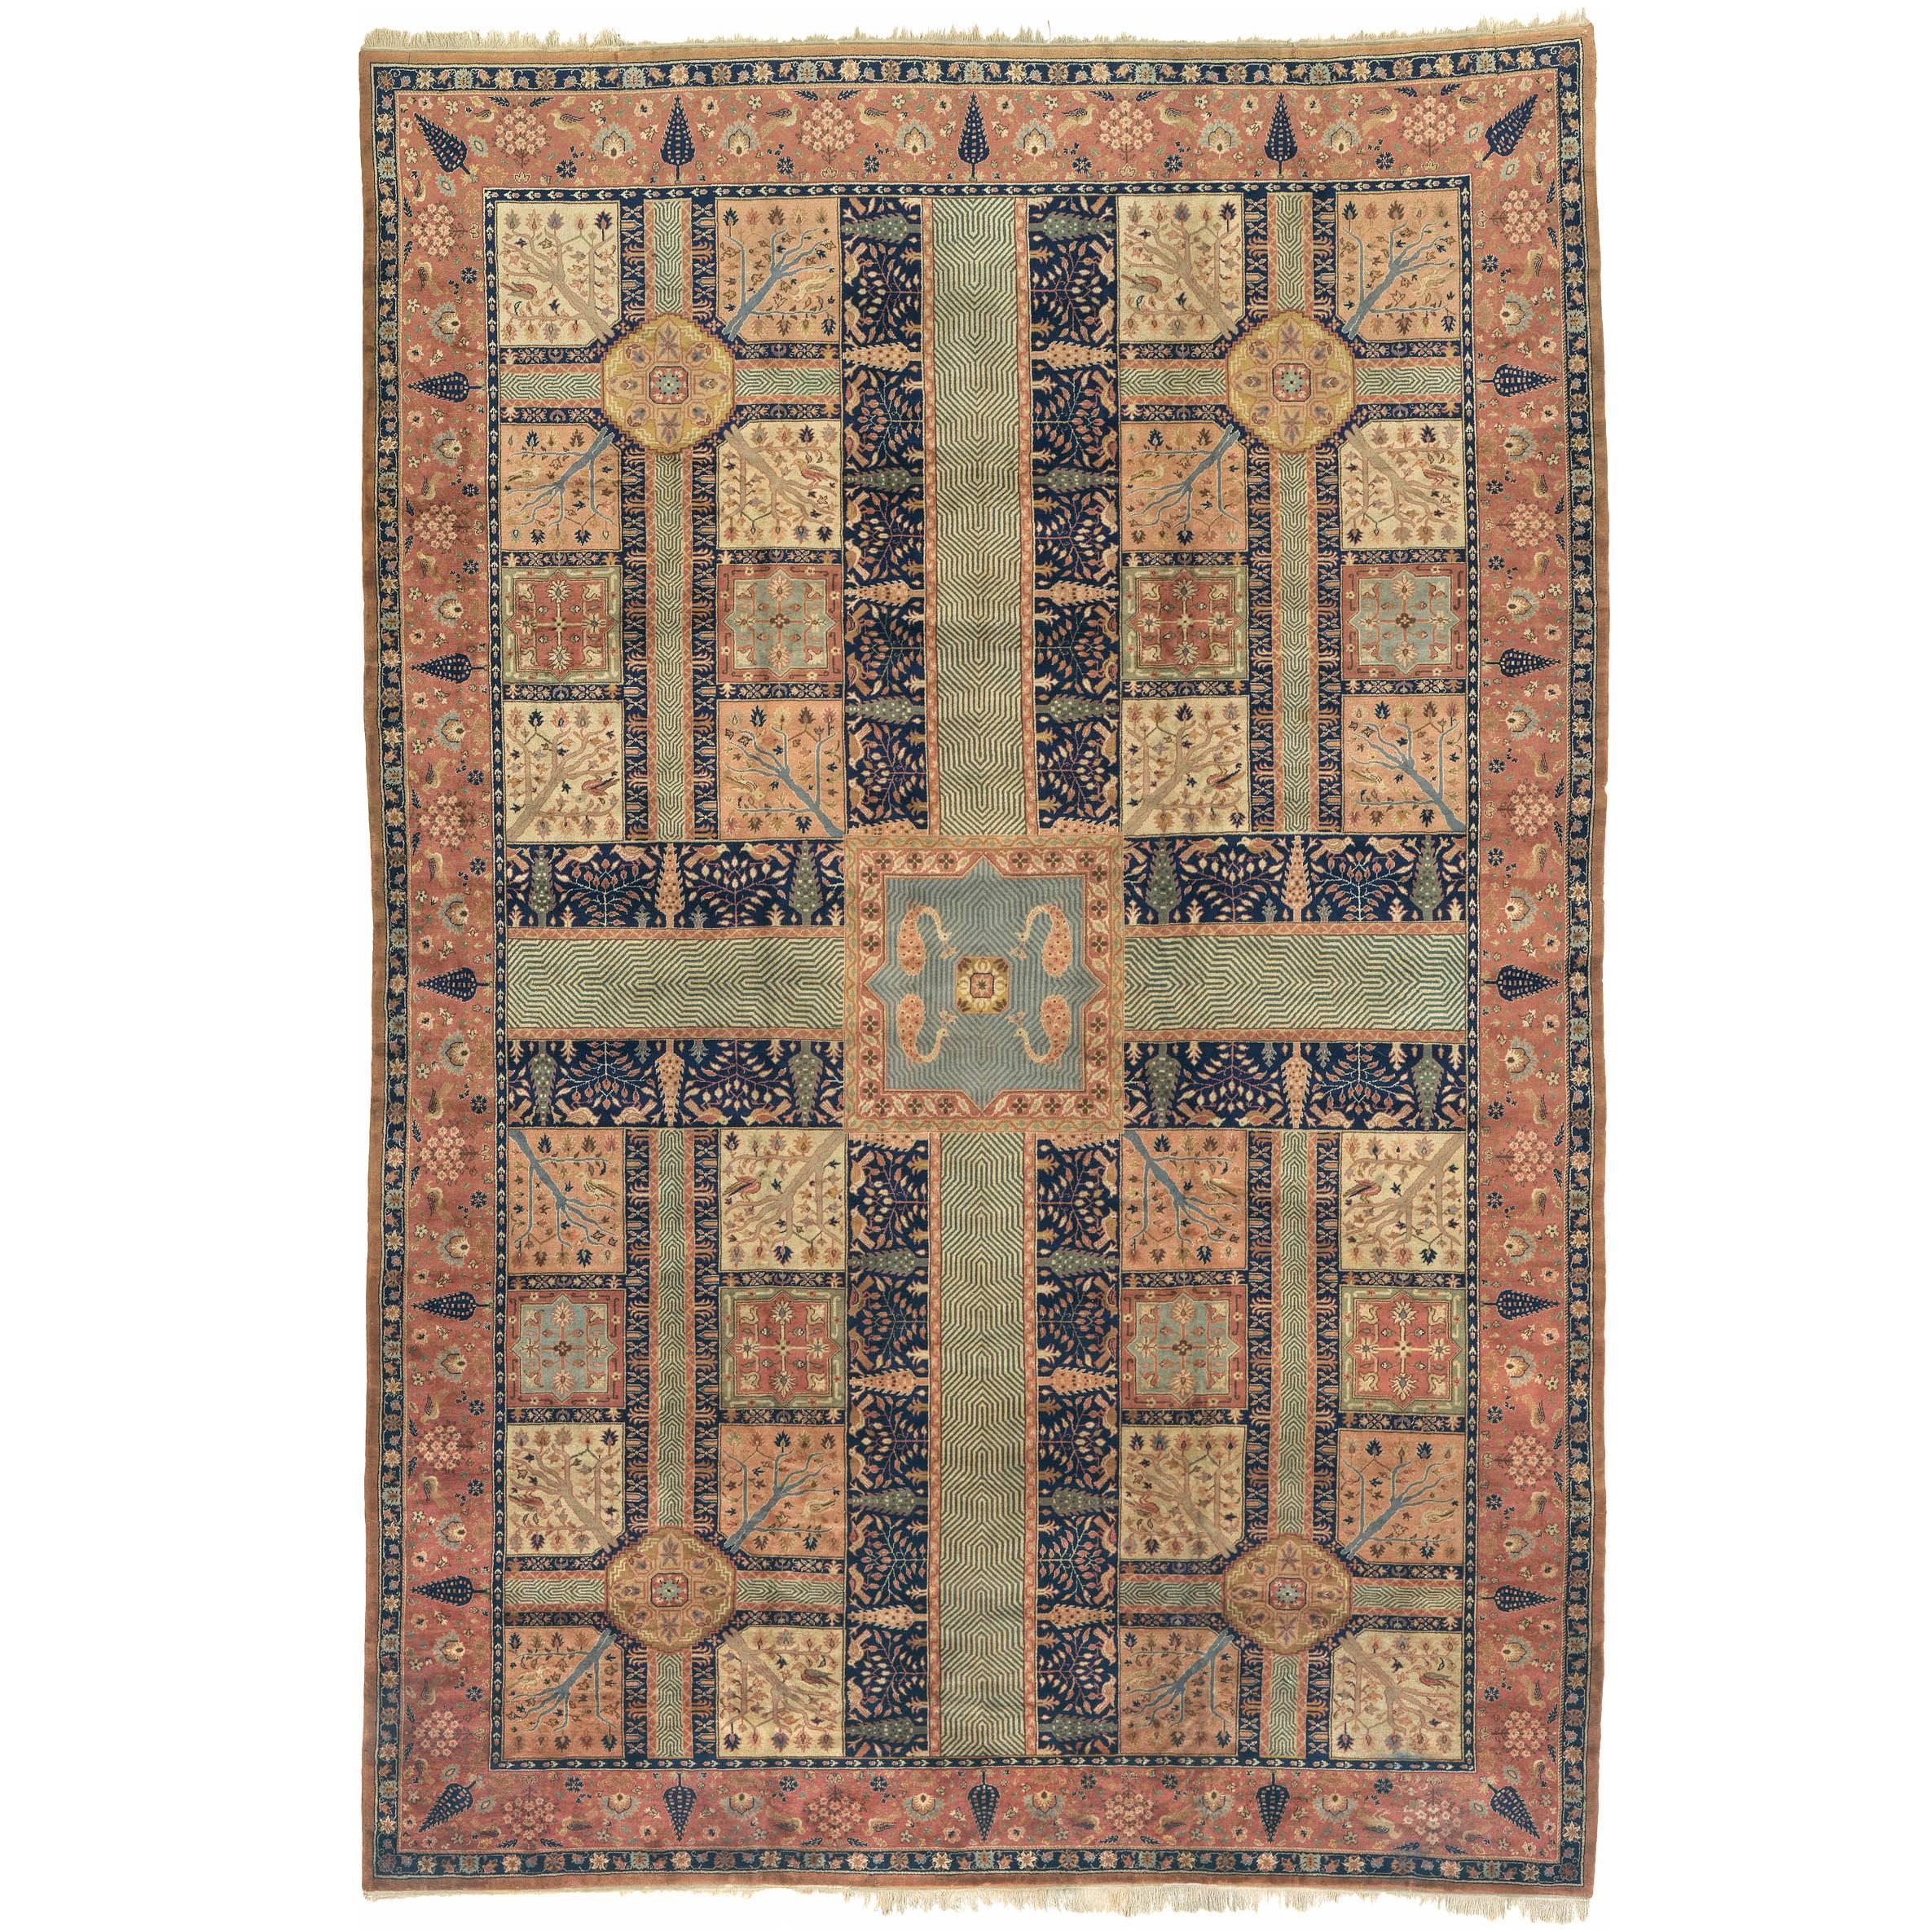 Indo-persischer Teppich des frühen 20. Jahrhunderts